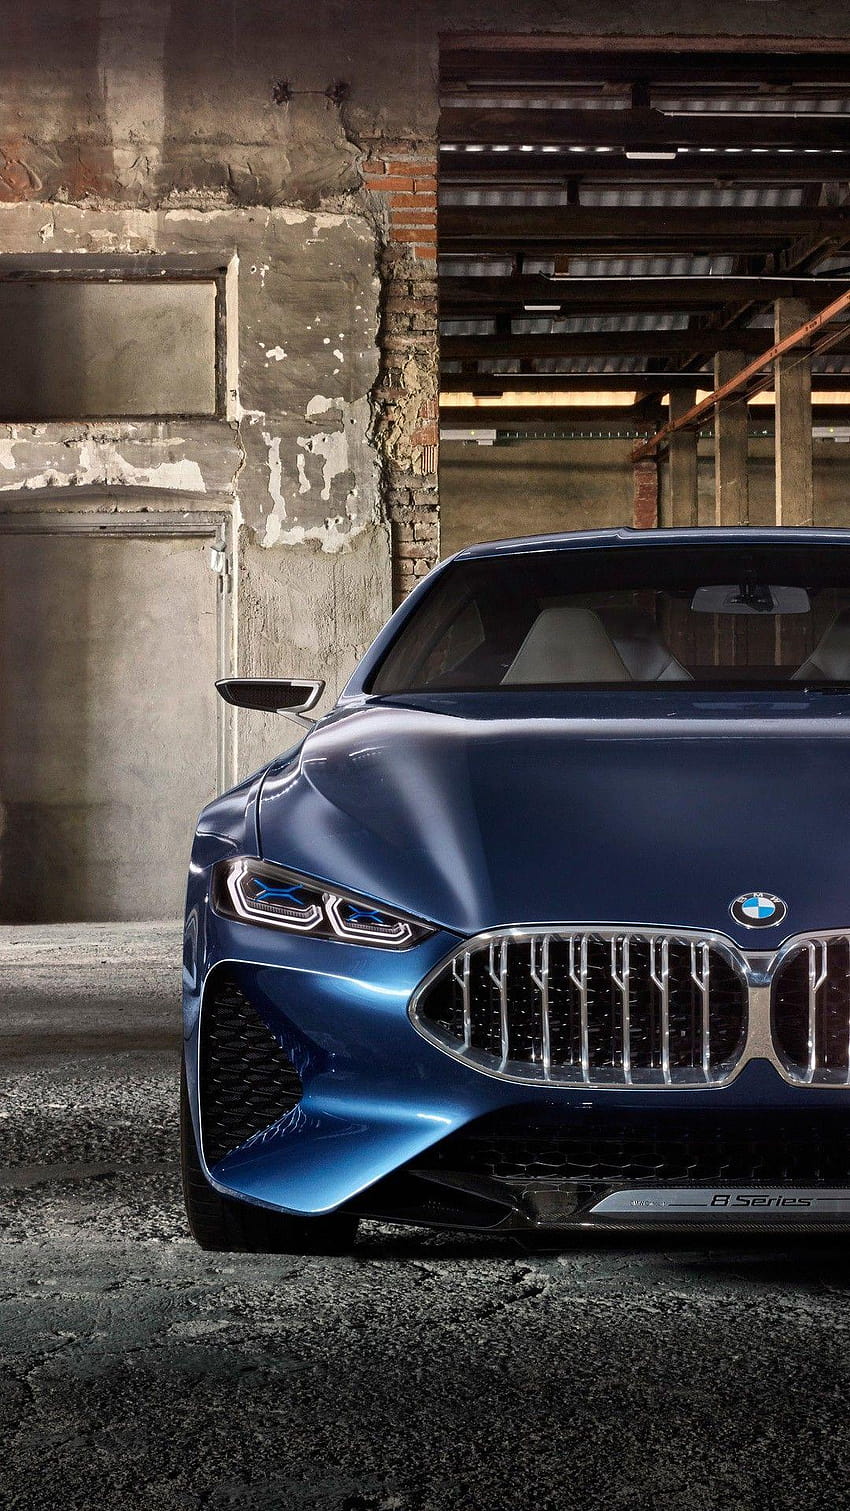 BMW: Với sự kết hợp hoàn hảo giữa tính năng vận hành và kiểu dáng độc đáo, BMW sẽ khiến bạn cảm thấy tin tưởng và đầy phấn khích khi lái xe trên mọi cung đường. Nhấn vào hình ảnh để khám phá thế giới của BMW.